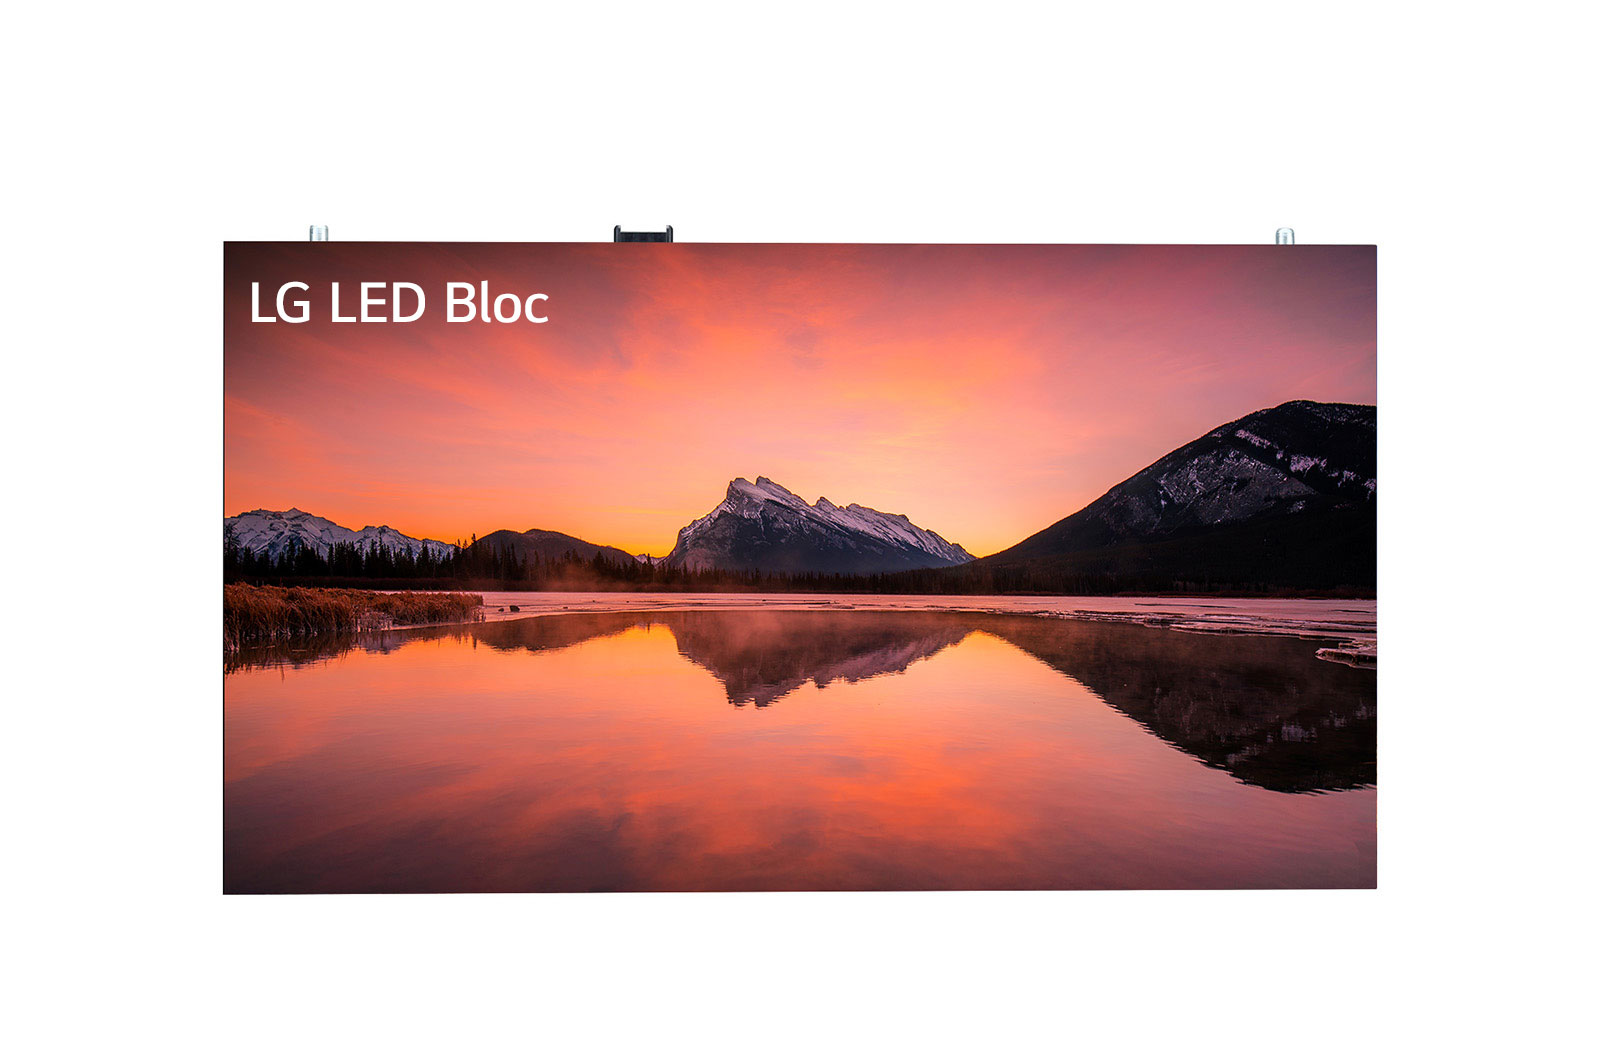 LG LED Bloc, LSAA015-MX2